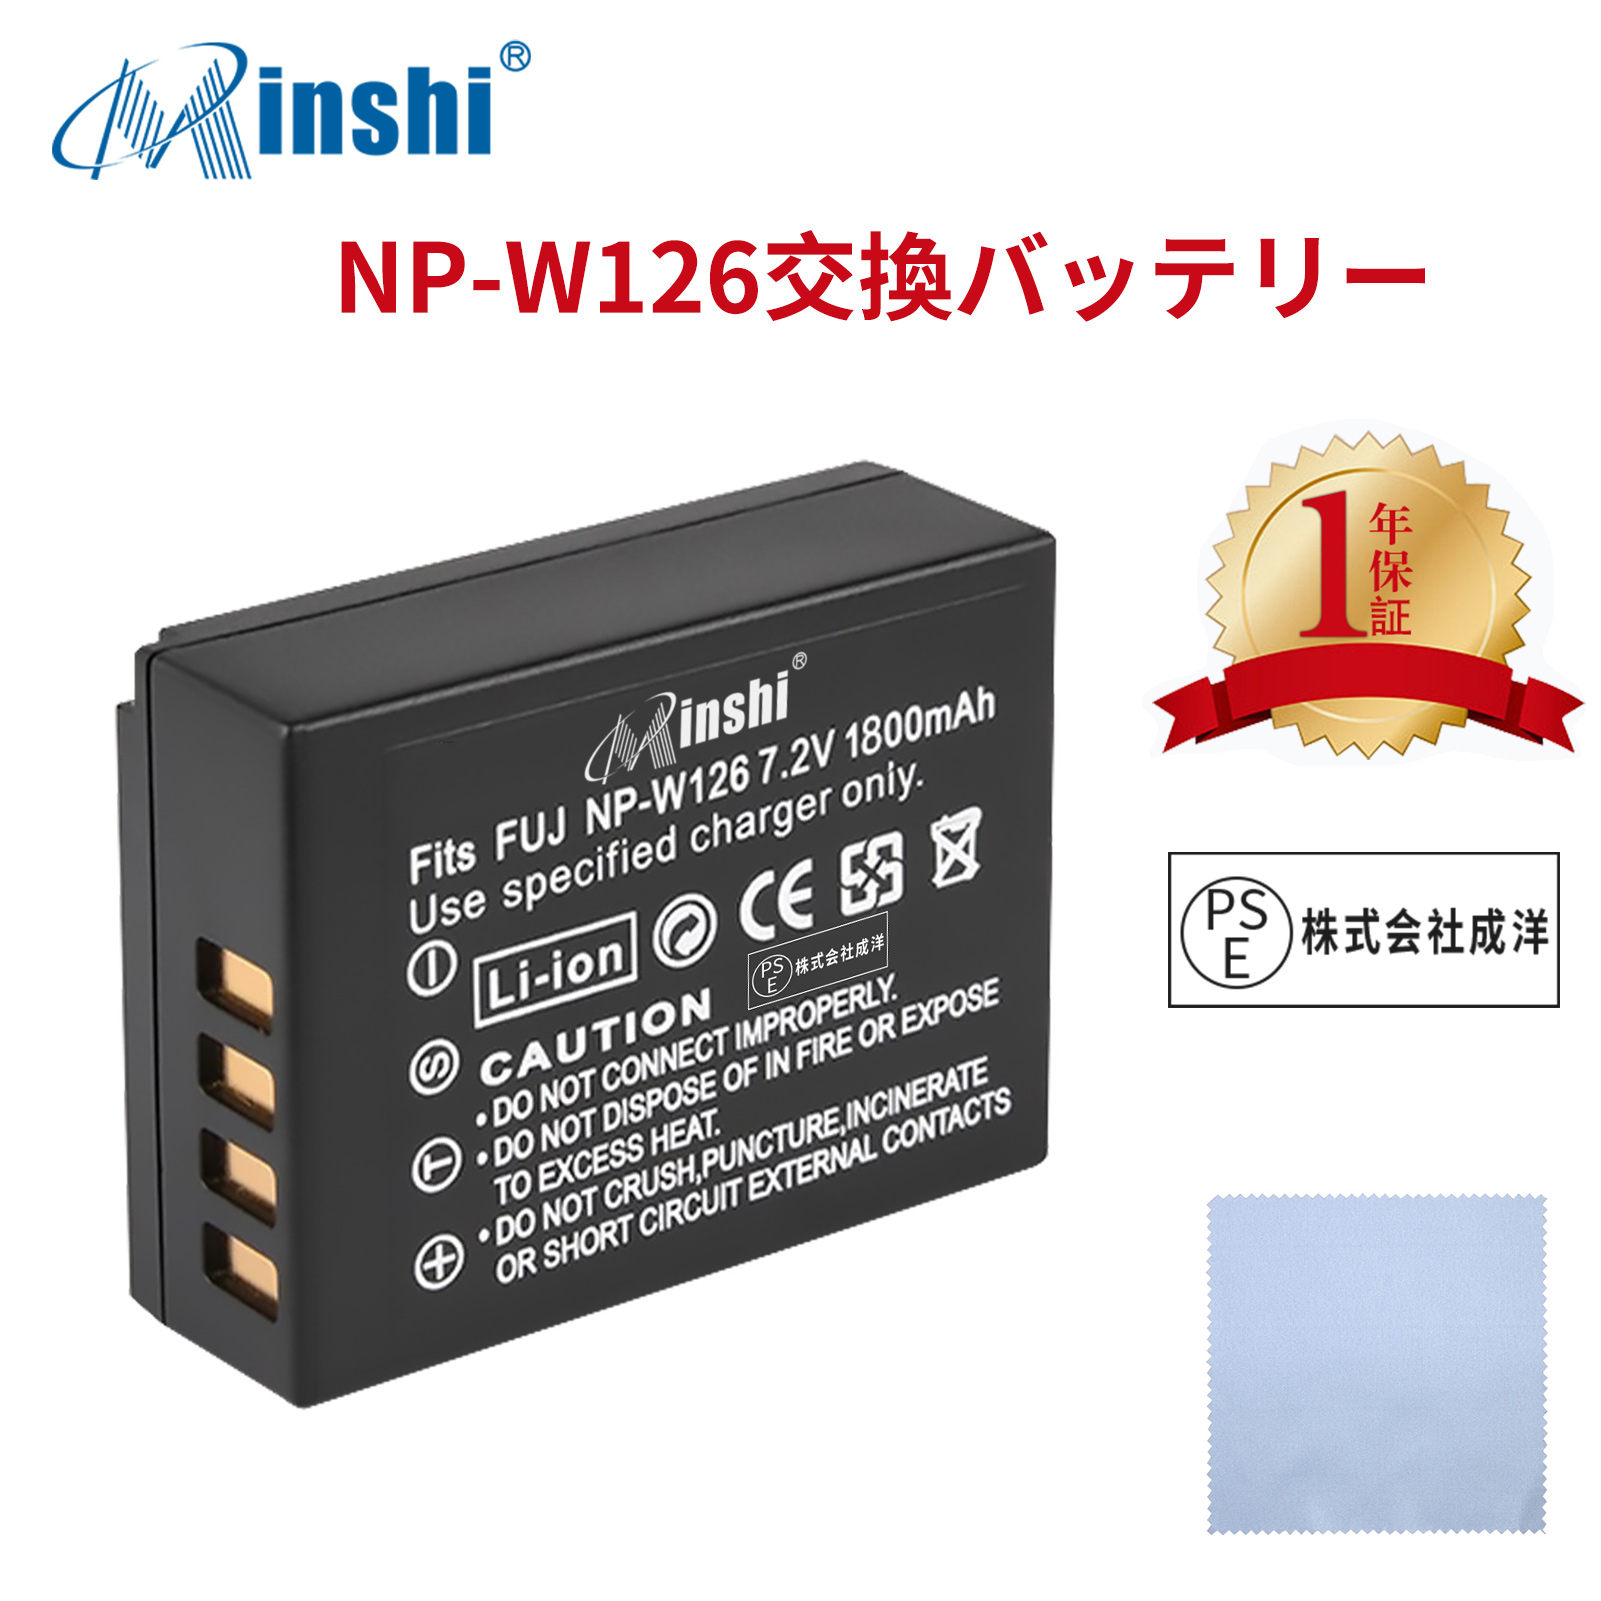 【クロス付き】minshi FUJIFILM FinePix HS33EXR NP-W126 【1800mAh 7.2V】 NP-W126 NP-W126S 高品質 NP-W126S NP-W126互換バッテリー